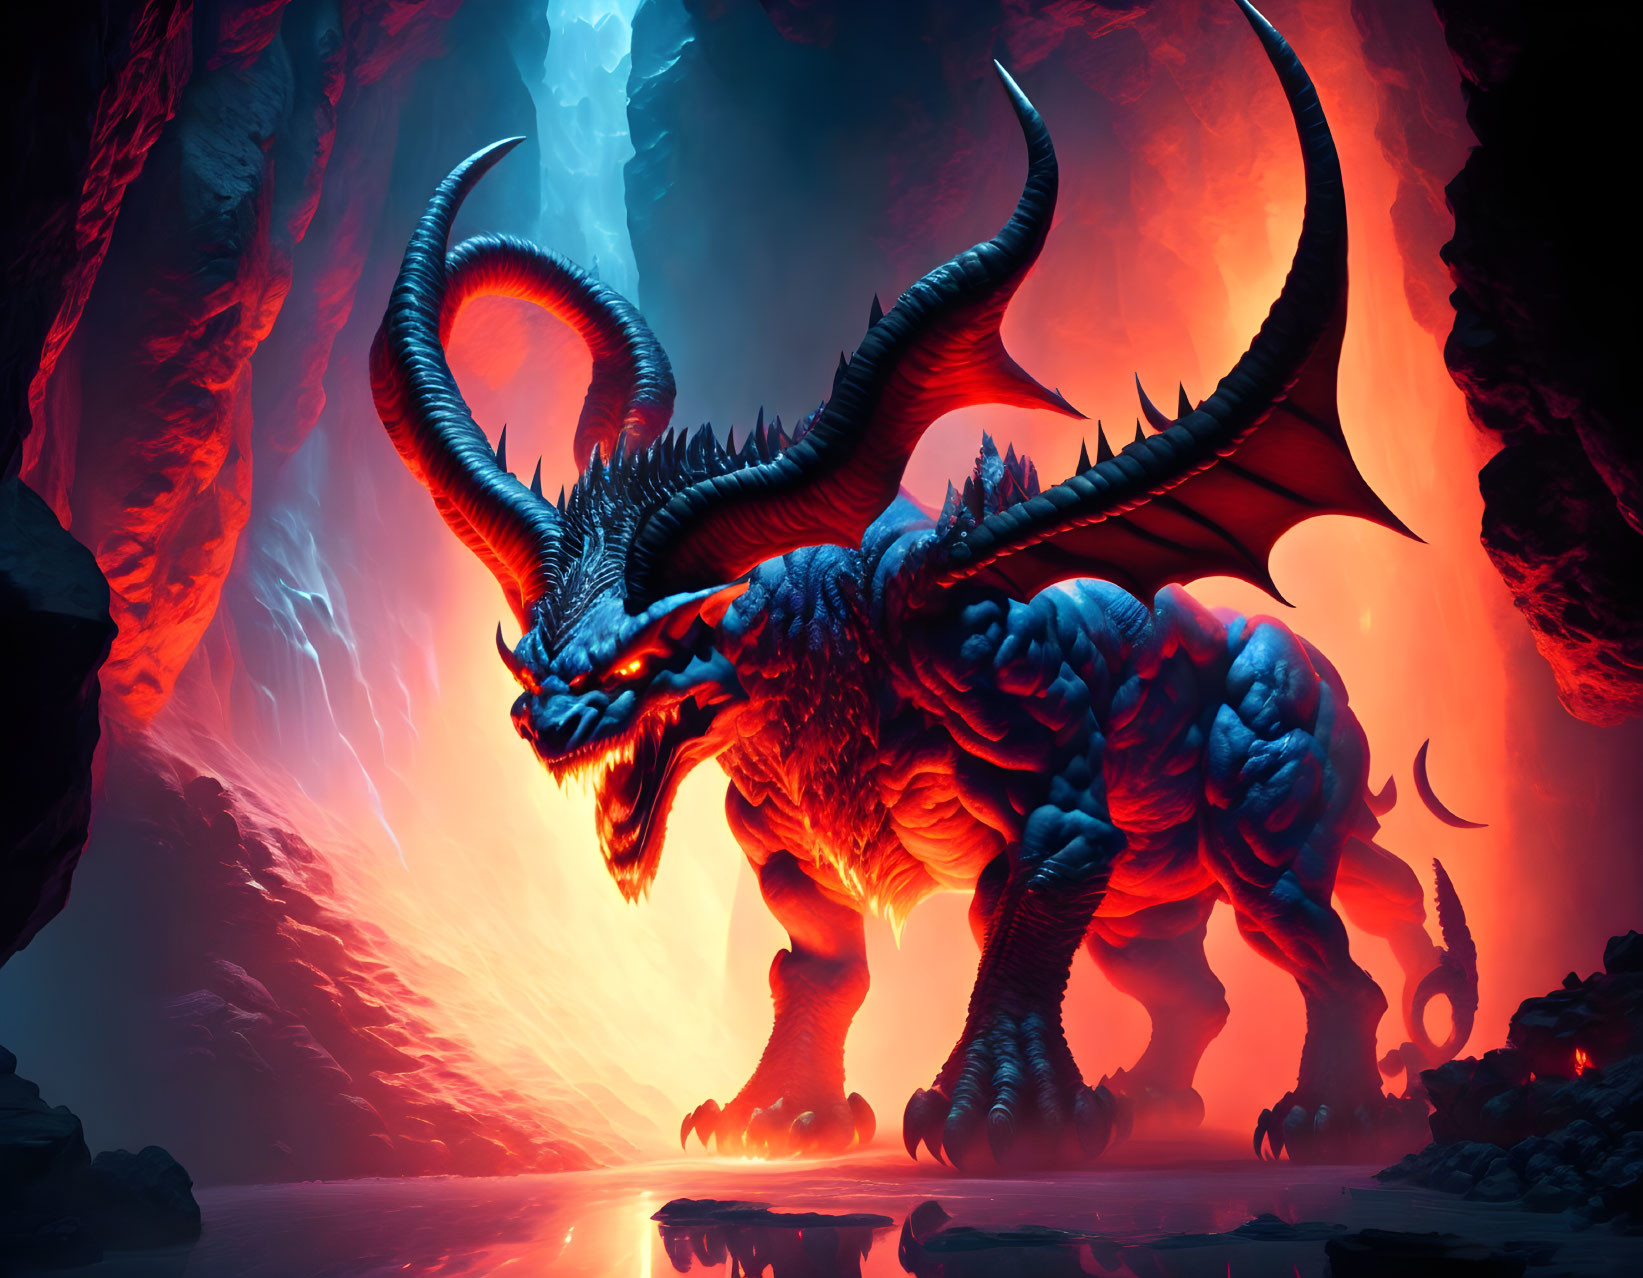 Blue dragon in fiery, lava-filled landscape under red sky